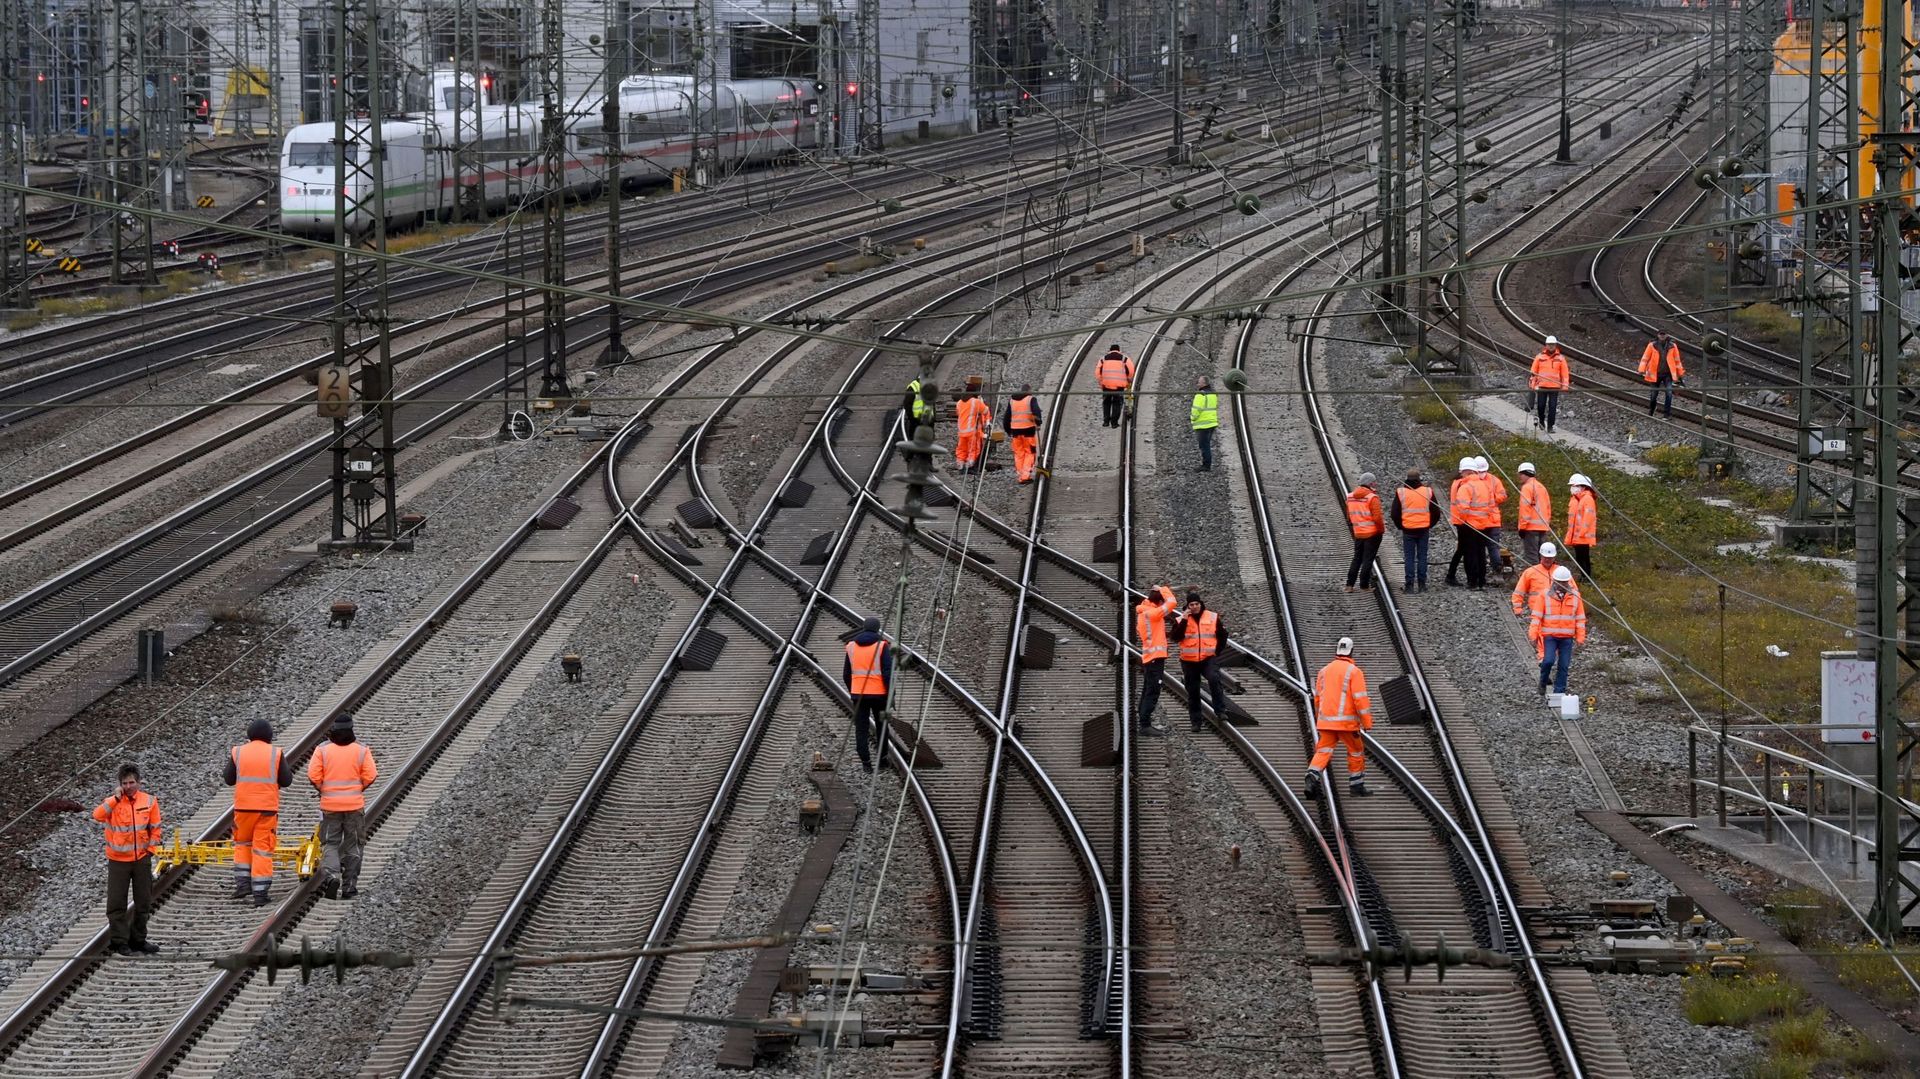 Les travailleurs vérifient les rails alors que les voies sont bloquées après l’explosion d’une bombe près de la gare de Munich, ce 1er décembre 2021